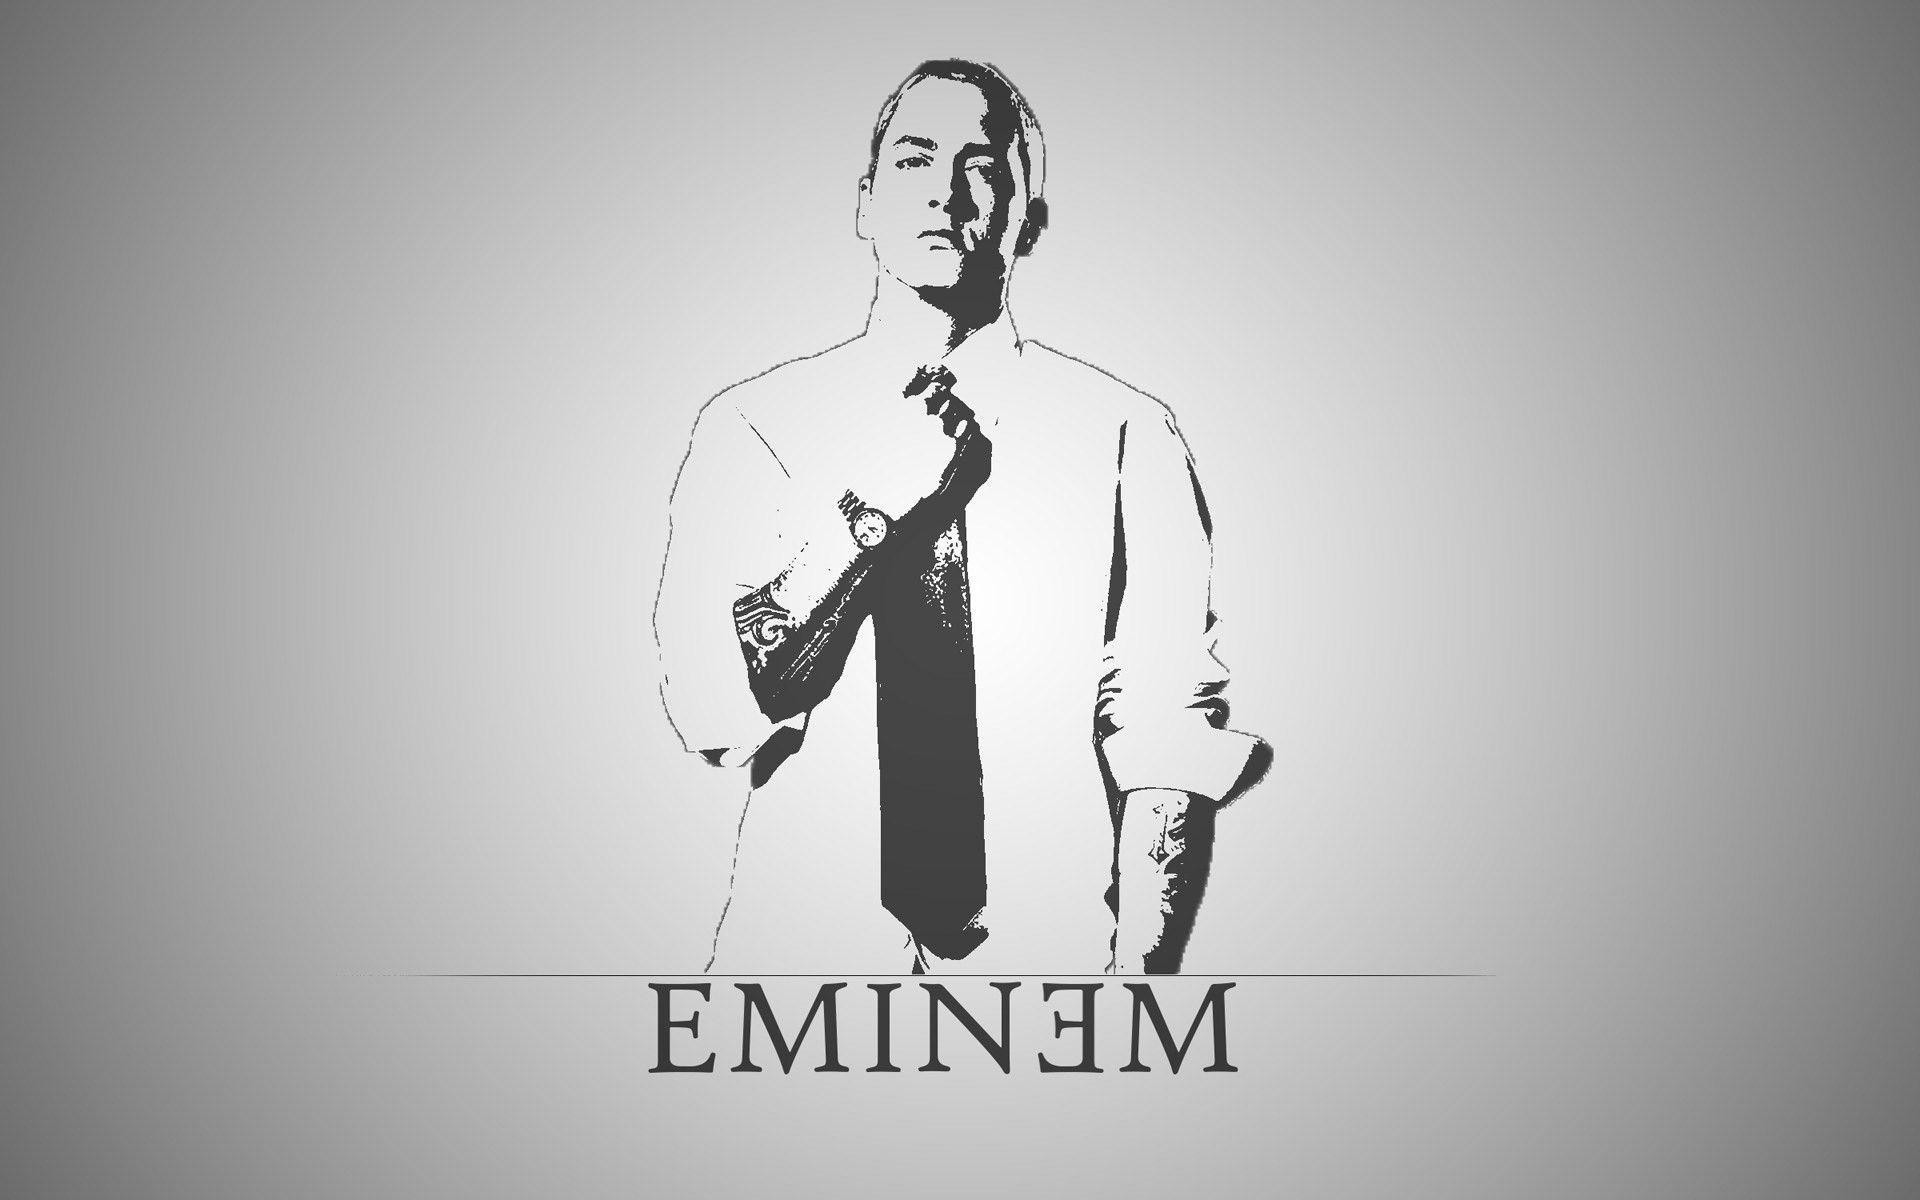 Eminem Background Image